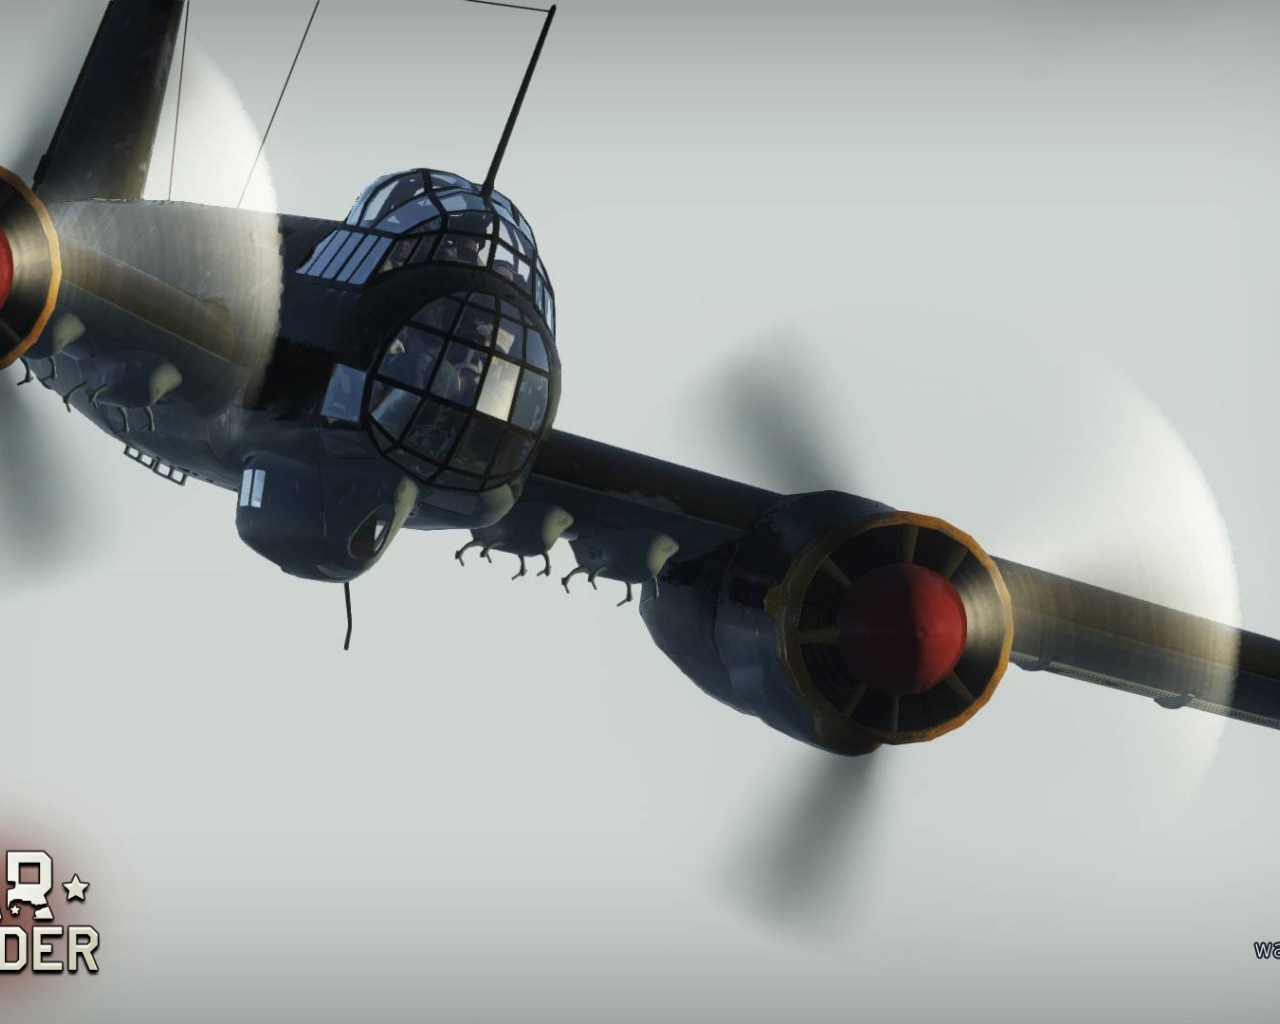 War Thunder огромный самолет крупным планом